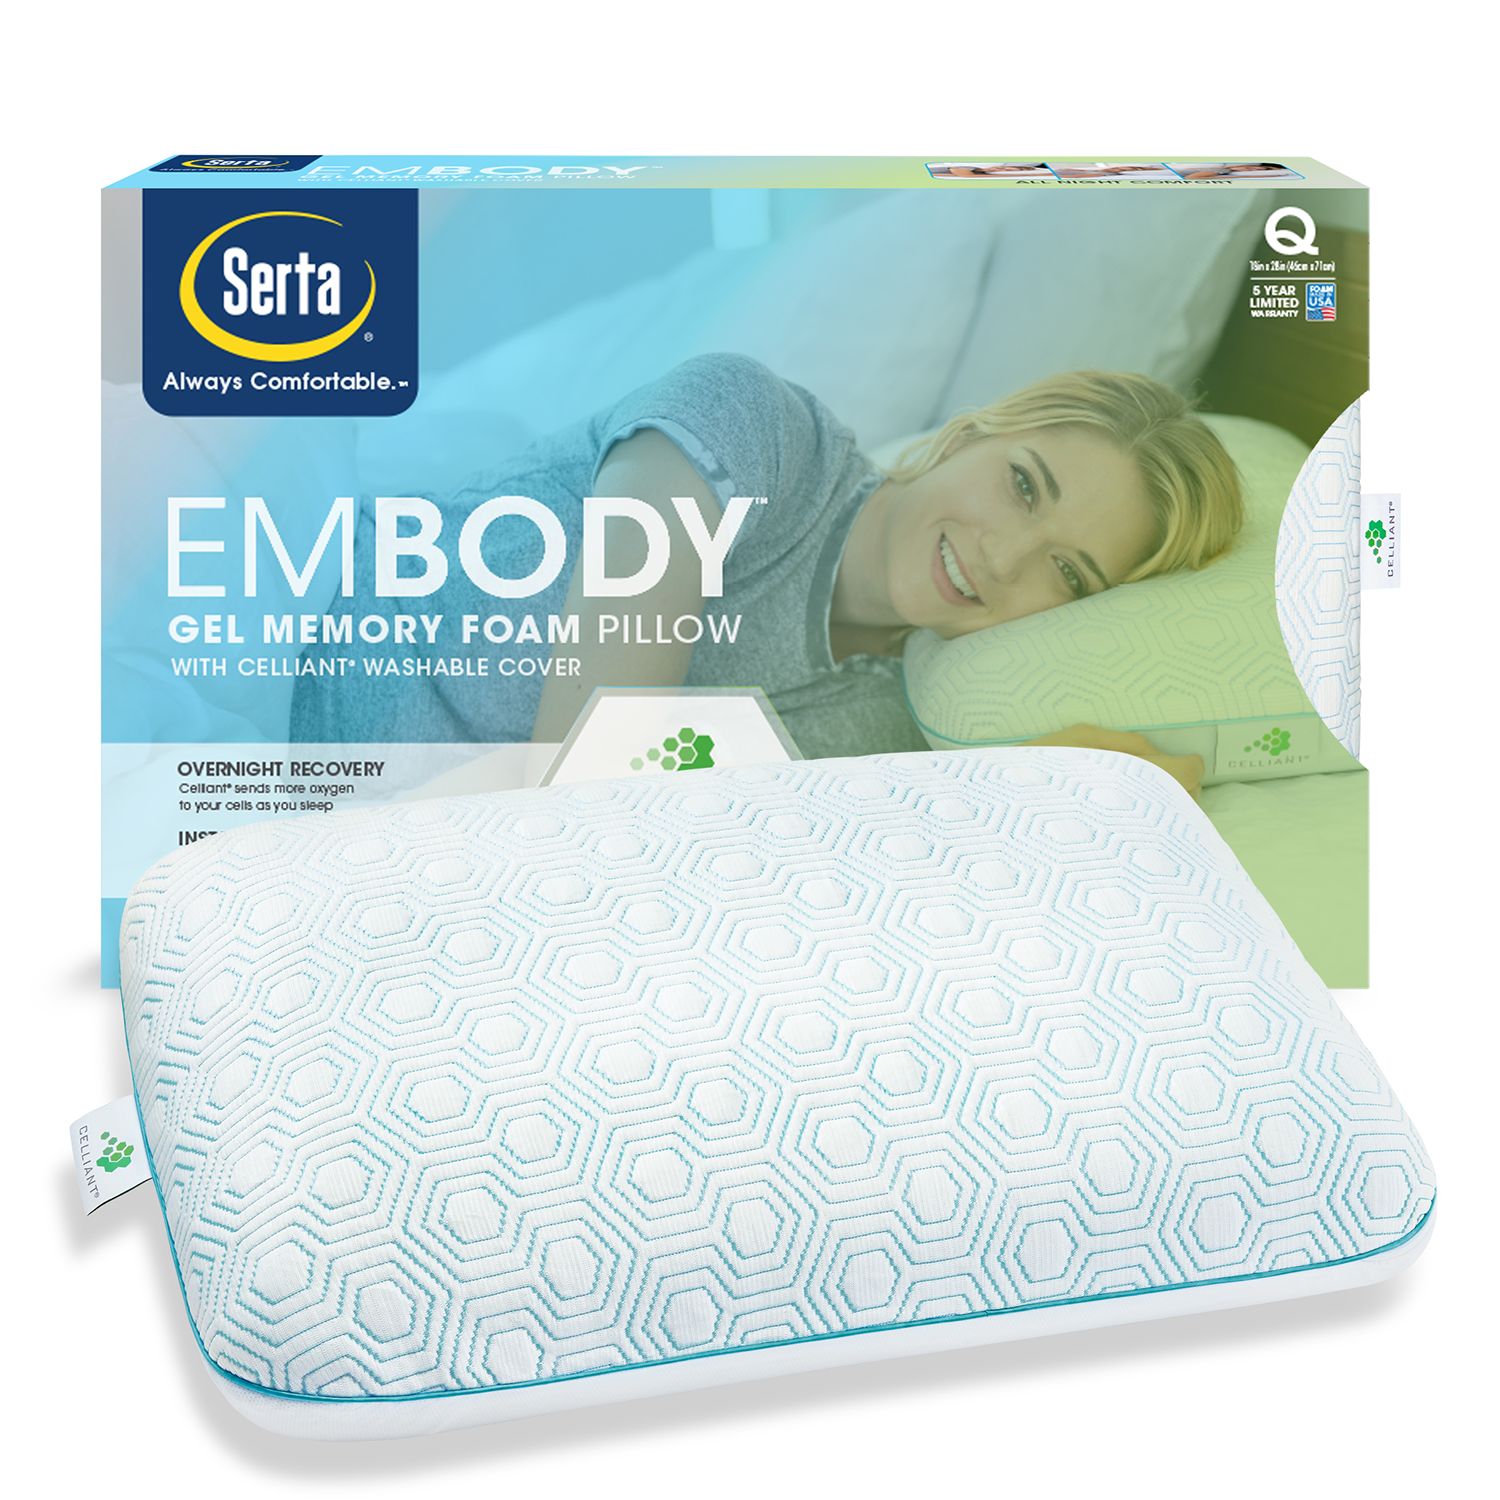 Serta Embody Gel Memory Foam Pillow